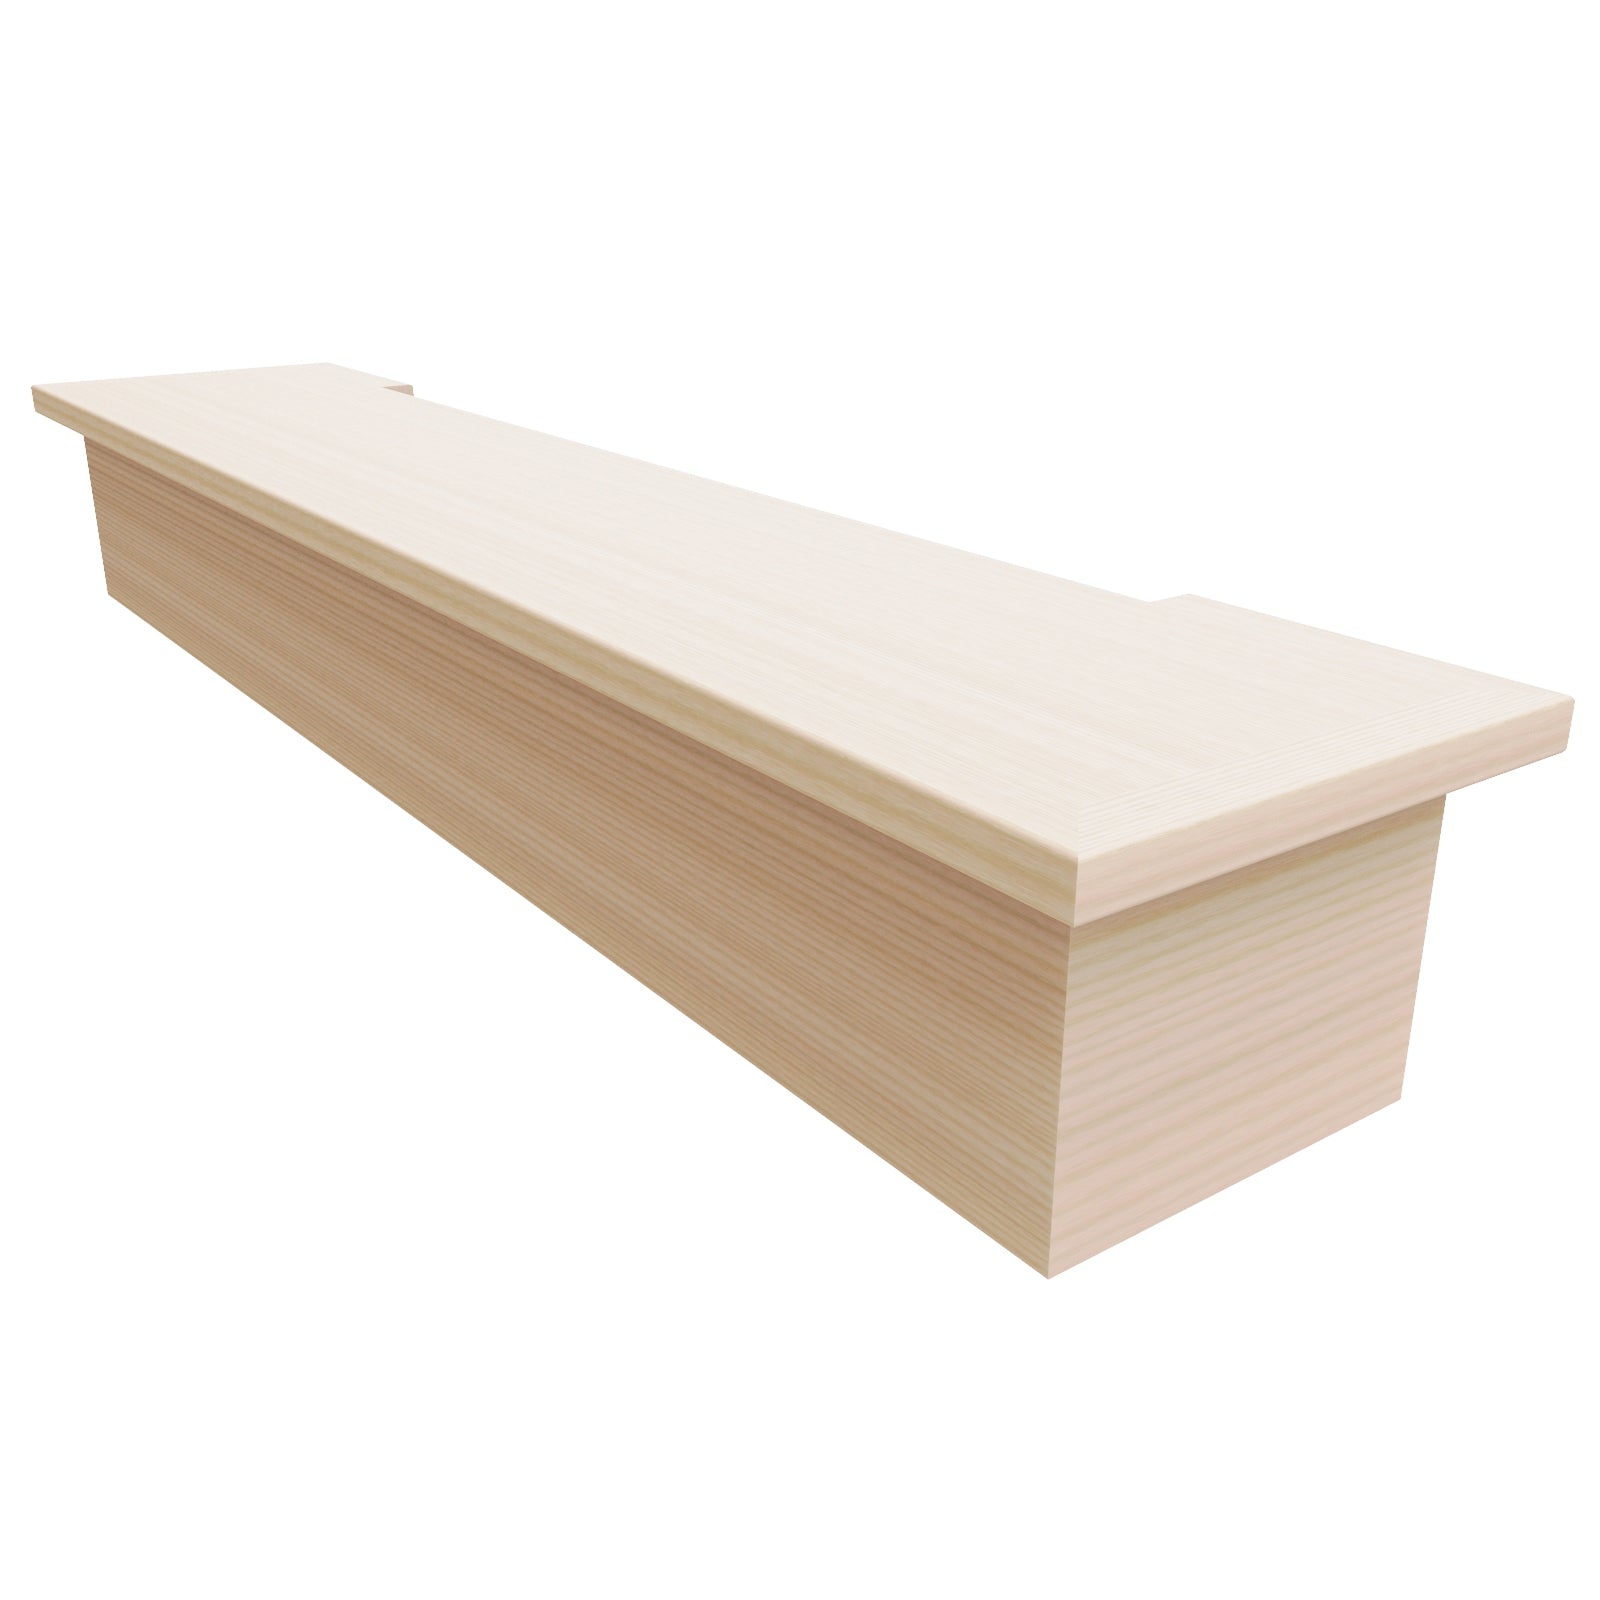 Reds Wood Design Kitchen Shelf Riser